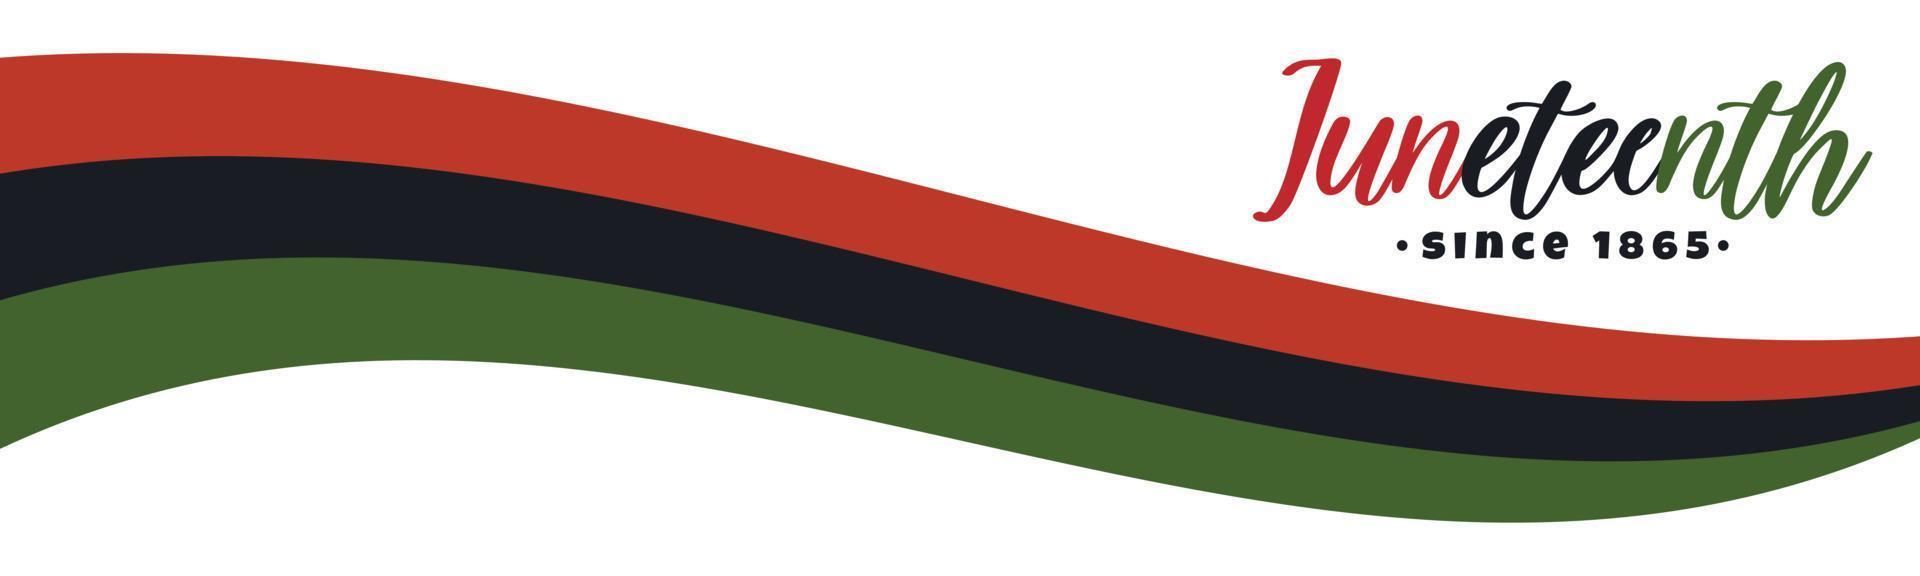 Juni, seit 1865 Textbeschriftungslogo. horizontales Bannerdesign mit panafrikanischer, schwarzer Befreiungsflagge mit roten, schwarzen, grünen Streifen. Vektorillustration isoliert auf weißem Hintergrund, vektor